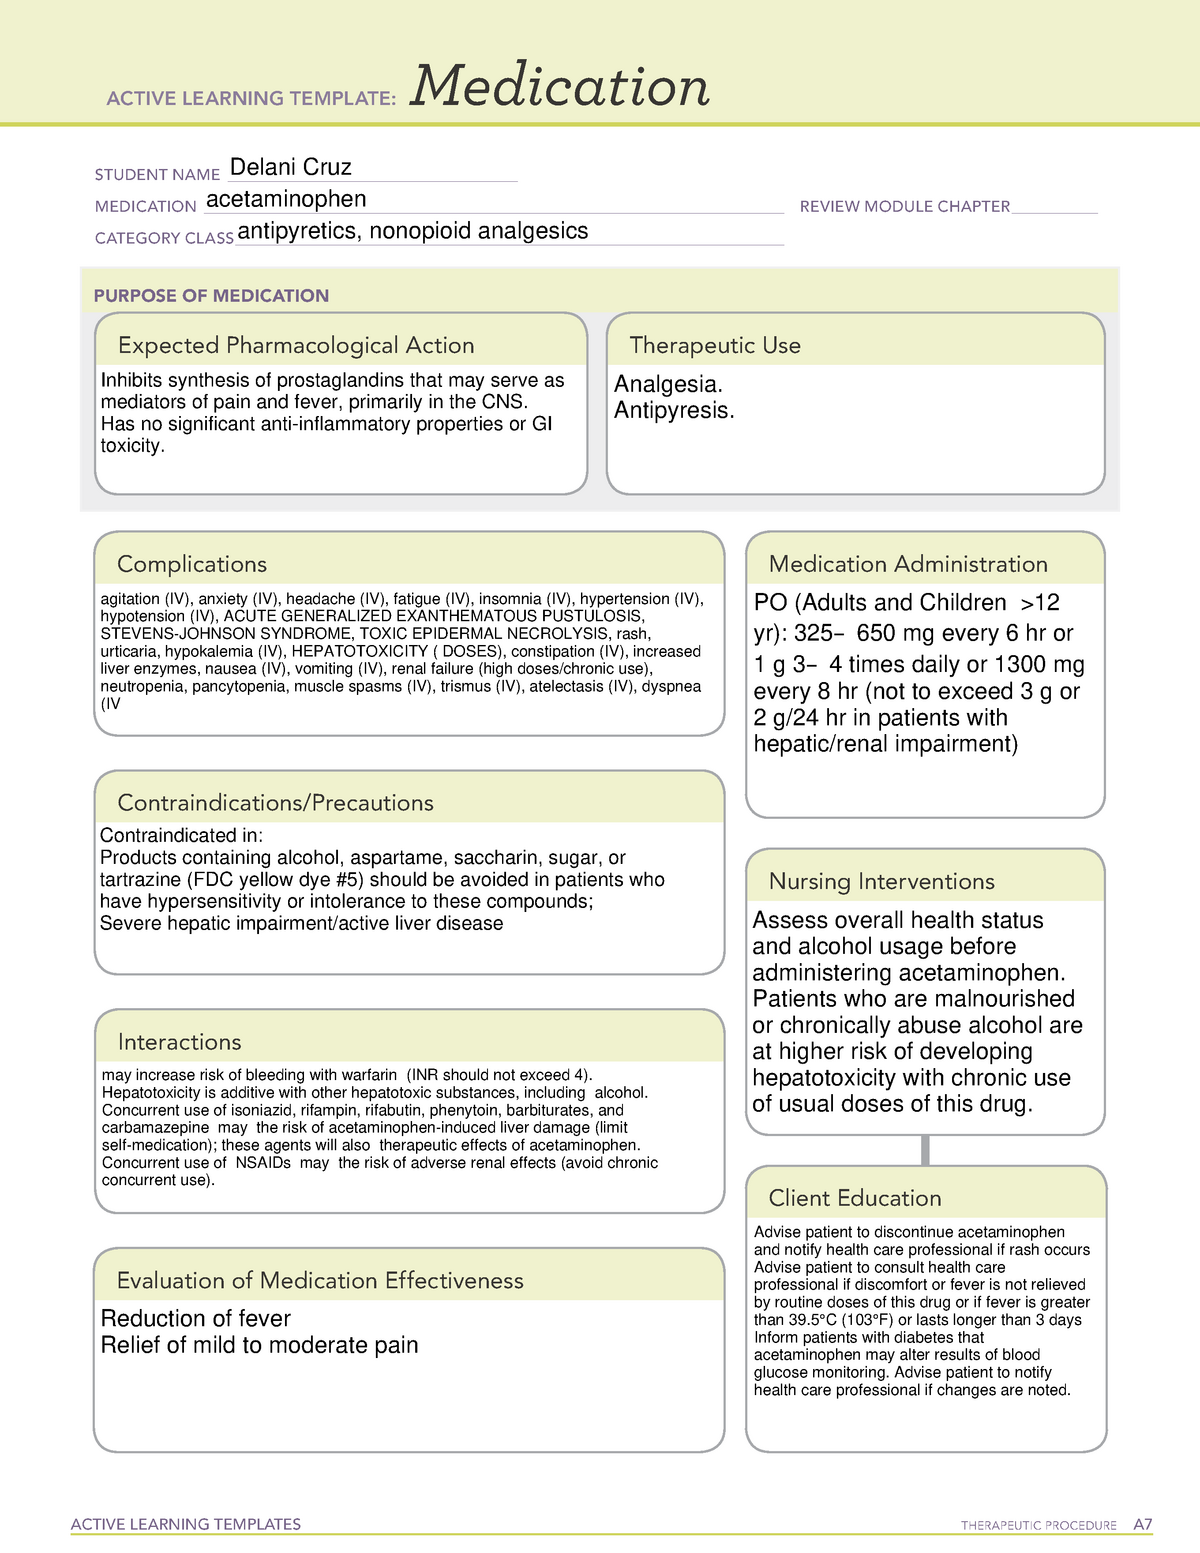 epinephrine-ati-medication-template